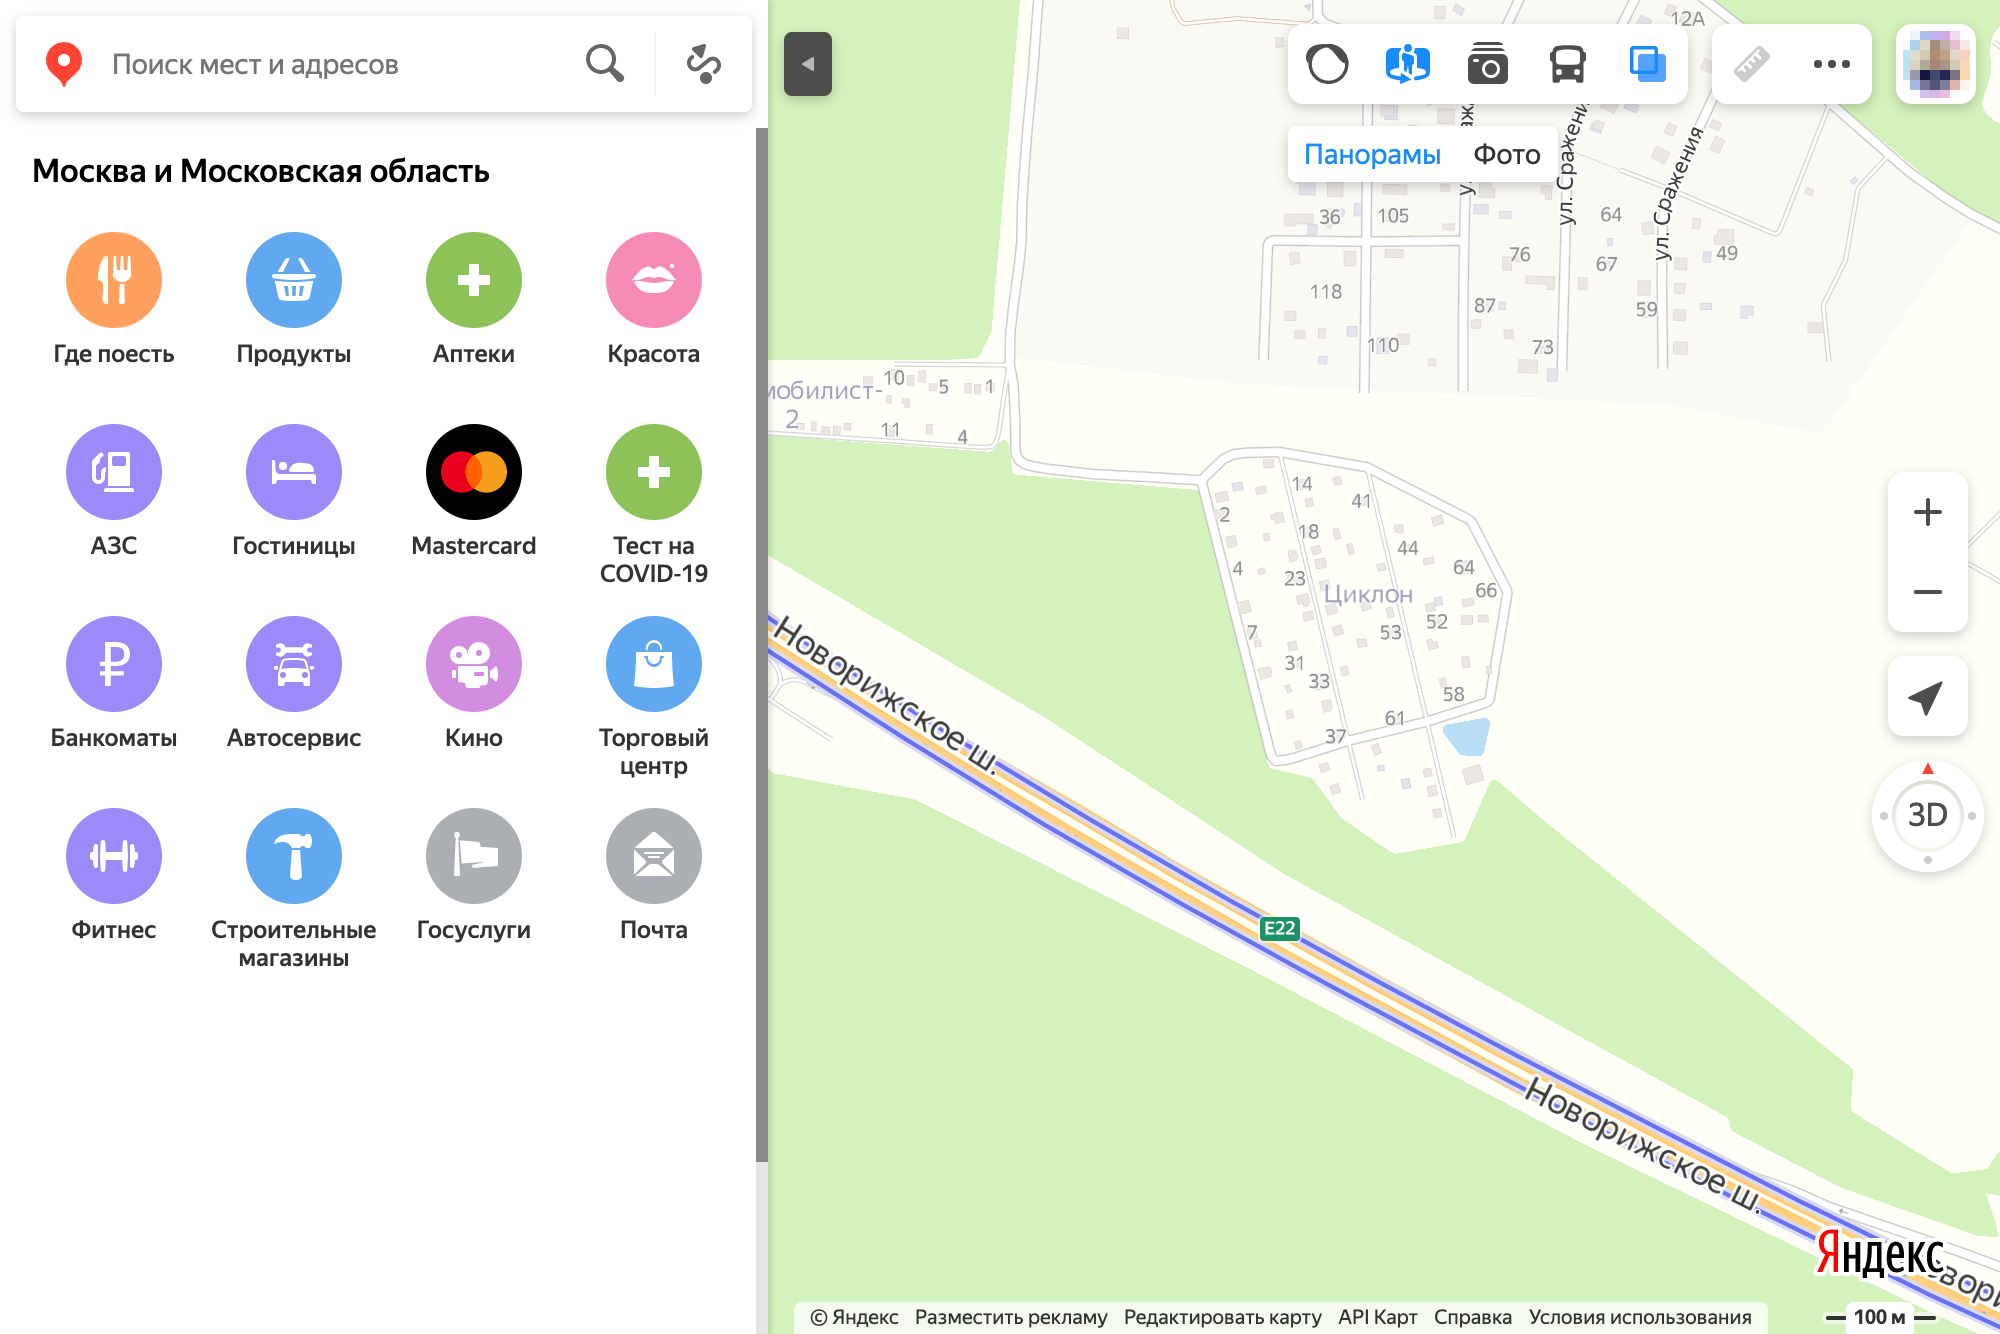 16 видов объектов инфраструктуры можно искать на картах «Яндекса». Прочие надо задавать в строке поиска